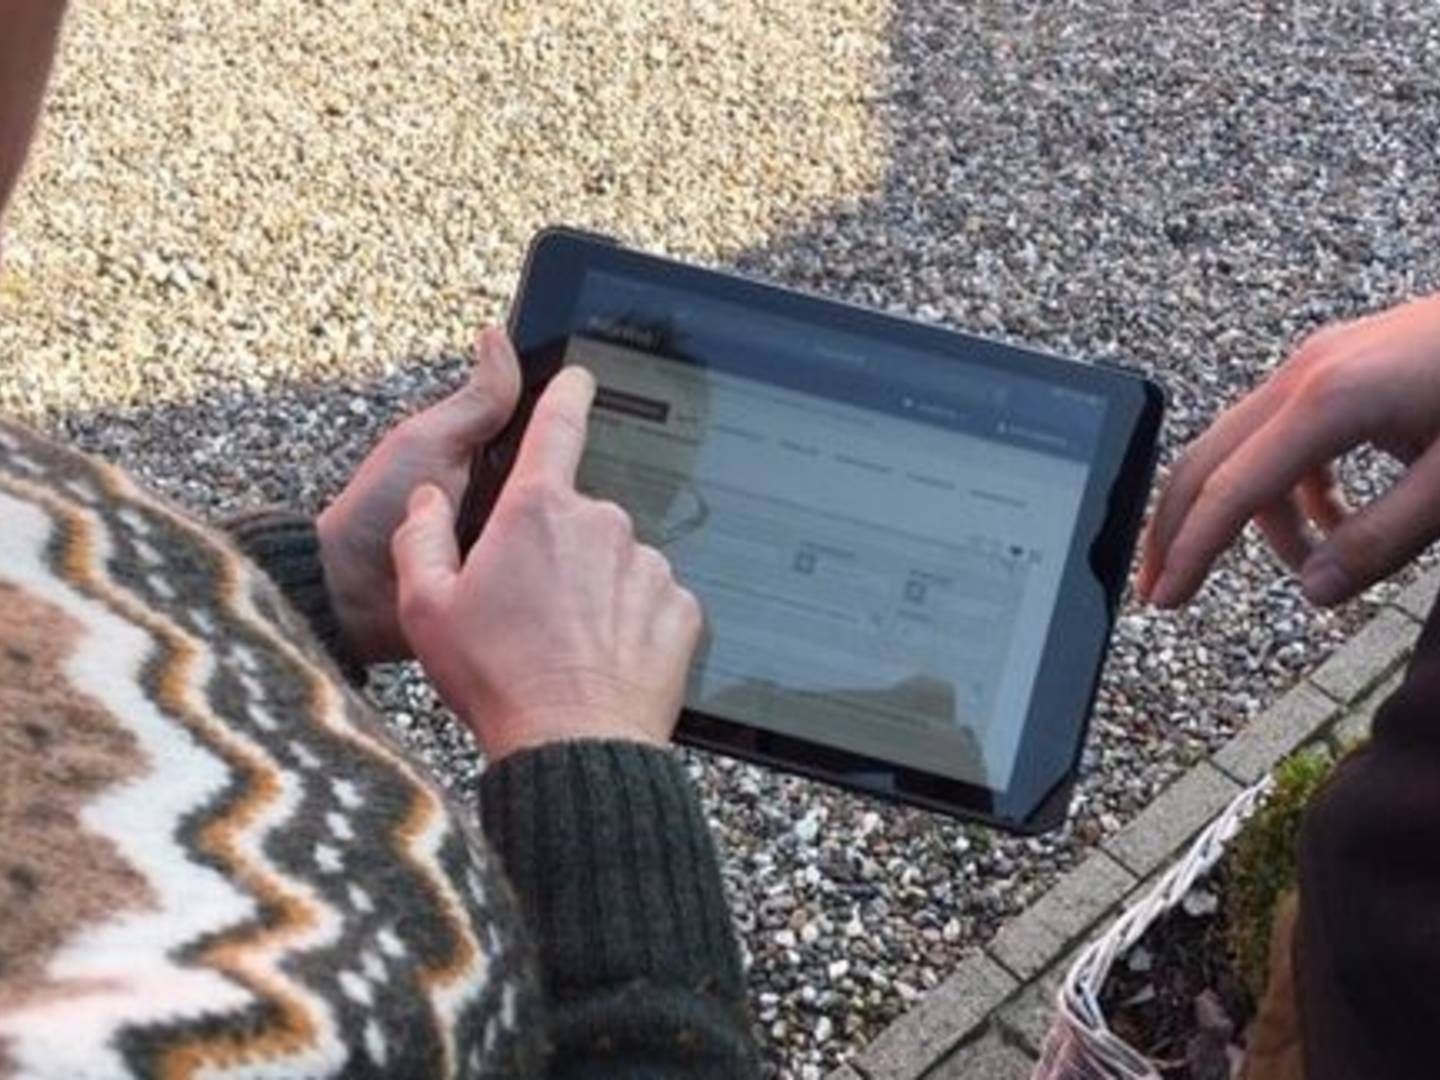 I Hjørring Kommune er man med den nye portalløsning fra Sweco gået fra manuel indtasning til iPad i miljøtilsynet med virksomheder og vandanlæg, lyder det i en meddelelse fra den rådgivende ingeinørvirksomed. | Foto: Hjørring kommune